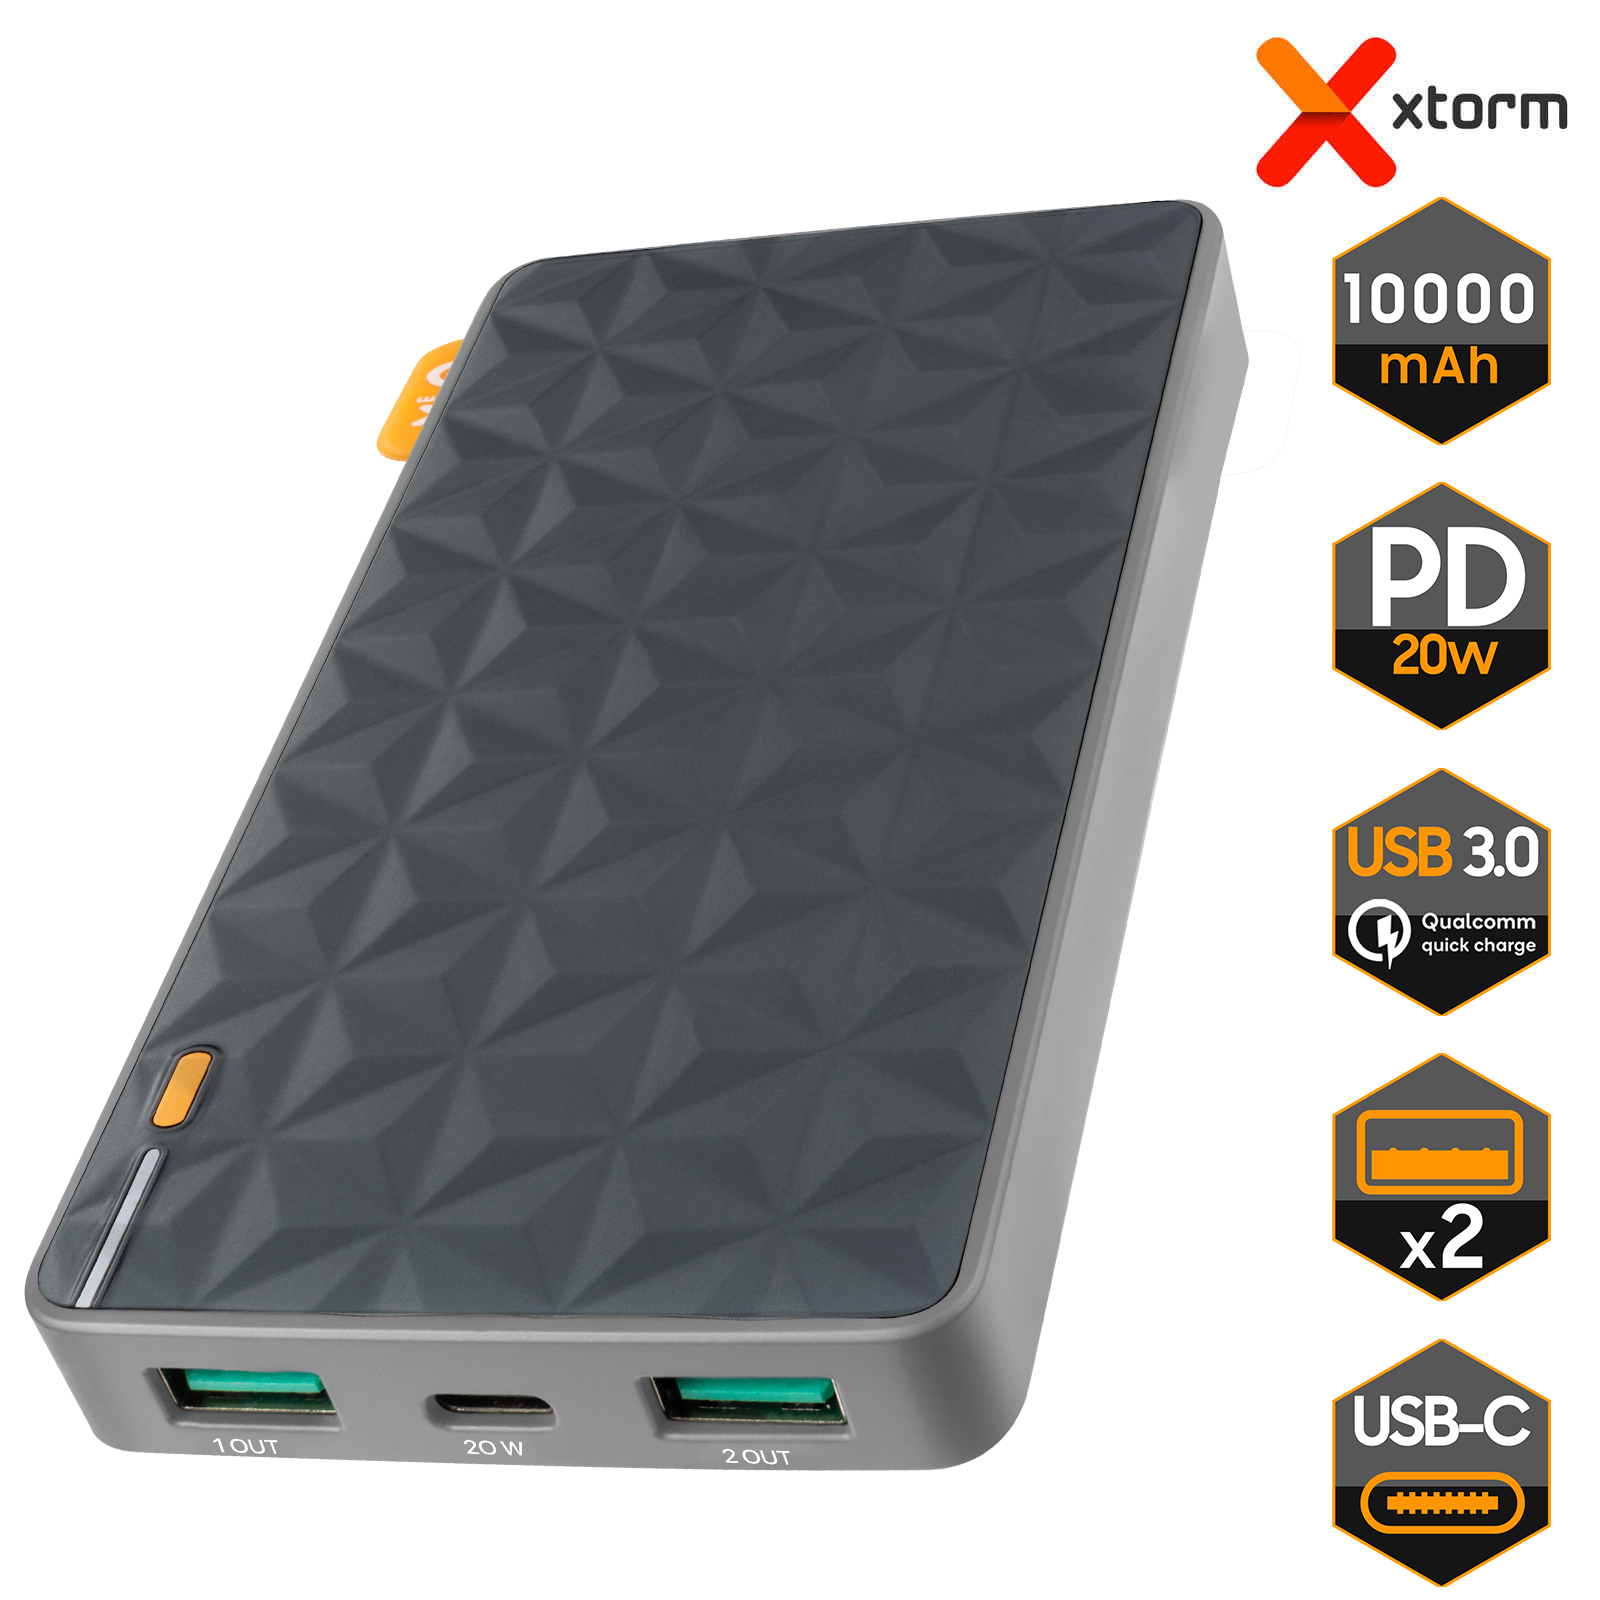 Powerbank Solaire 10000 mAh Certifié IPX4, Port USB-C Power Delivery 20W +  2x Ports USB, Xtorm - Noir / Orange - Français